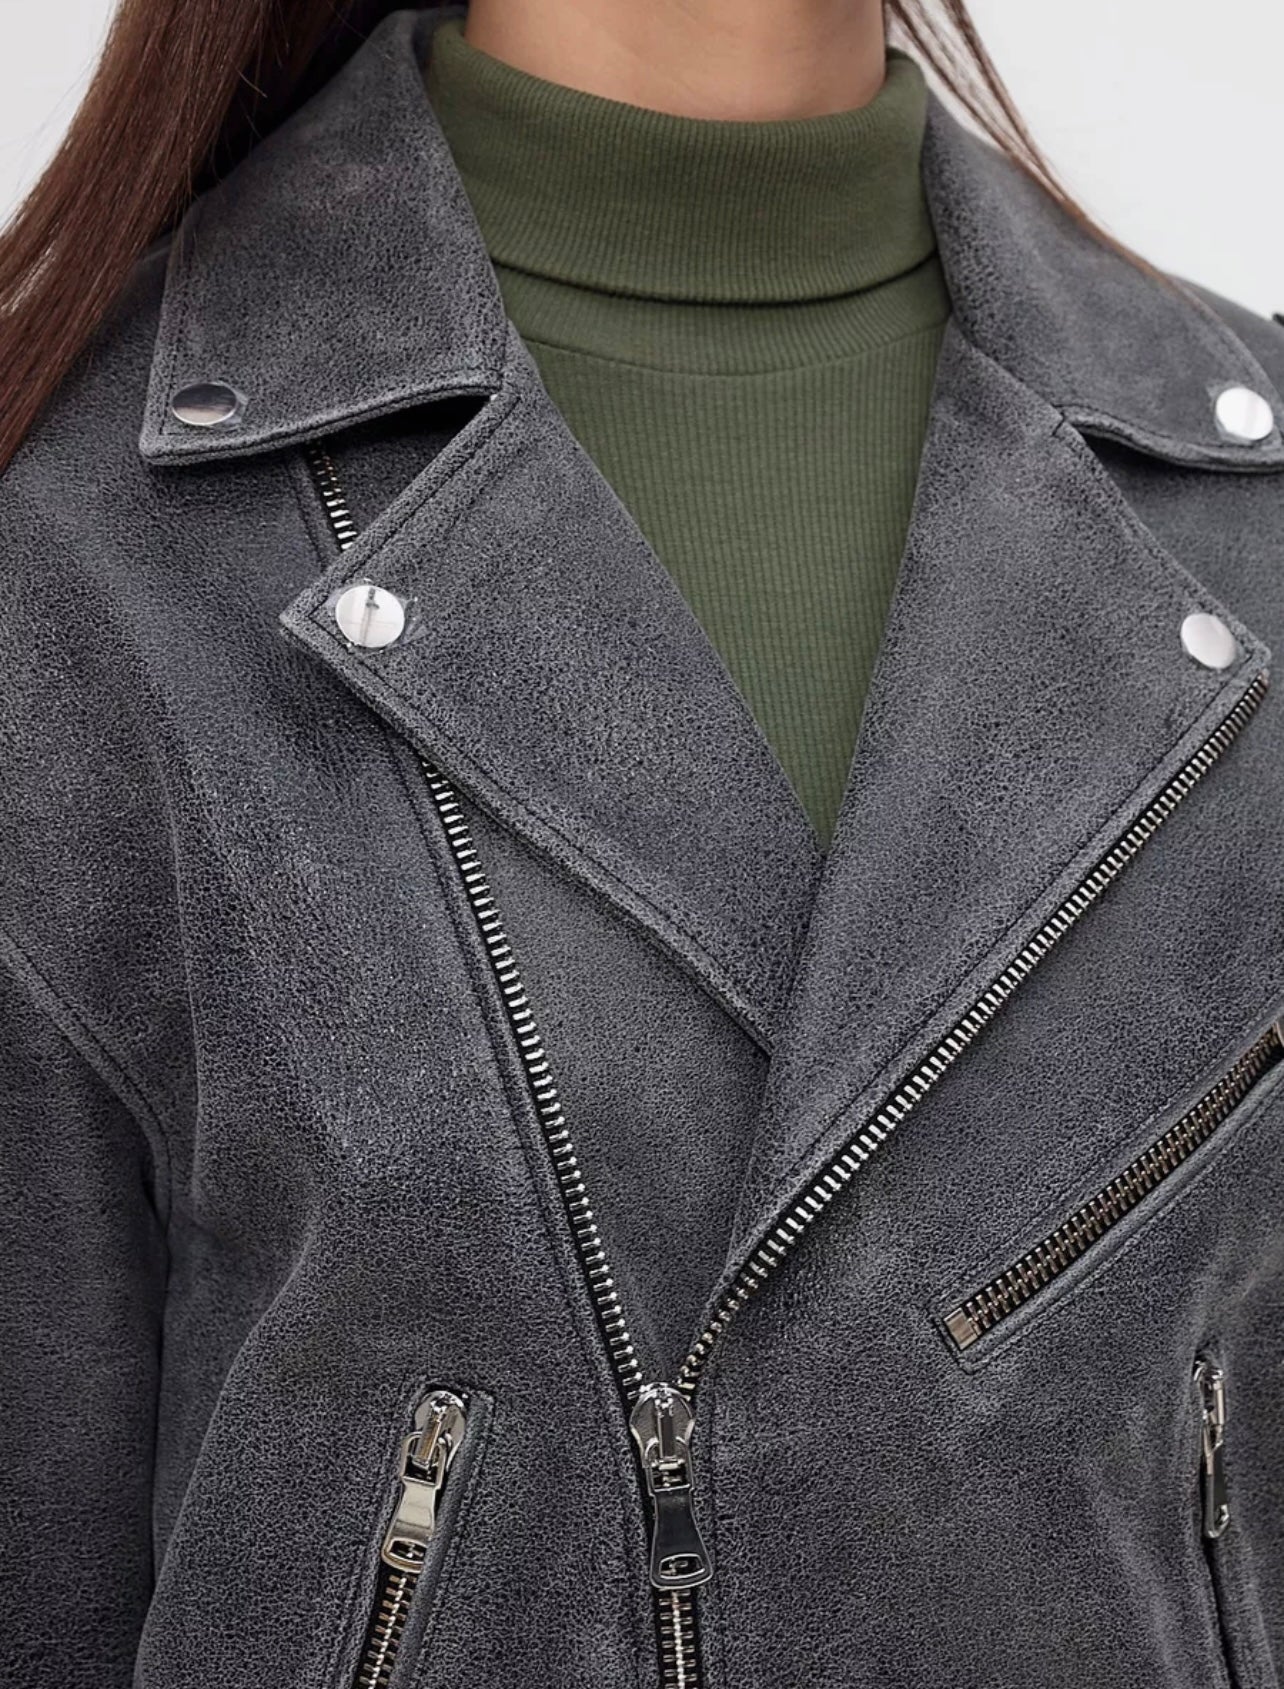 Vintage Effect Leather Jacket